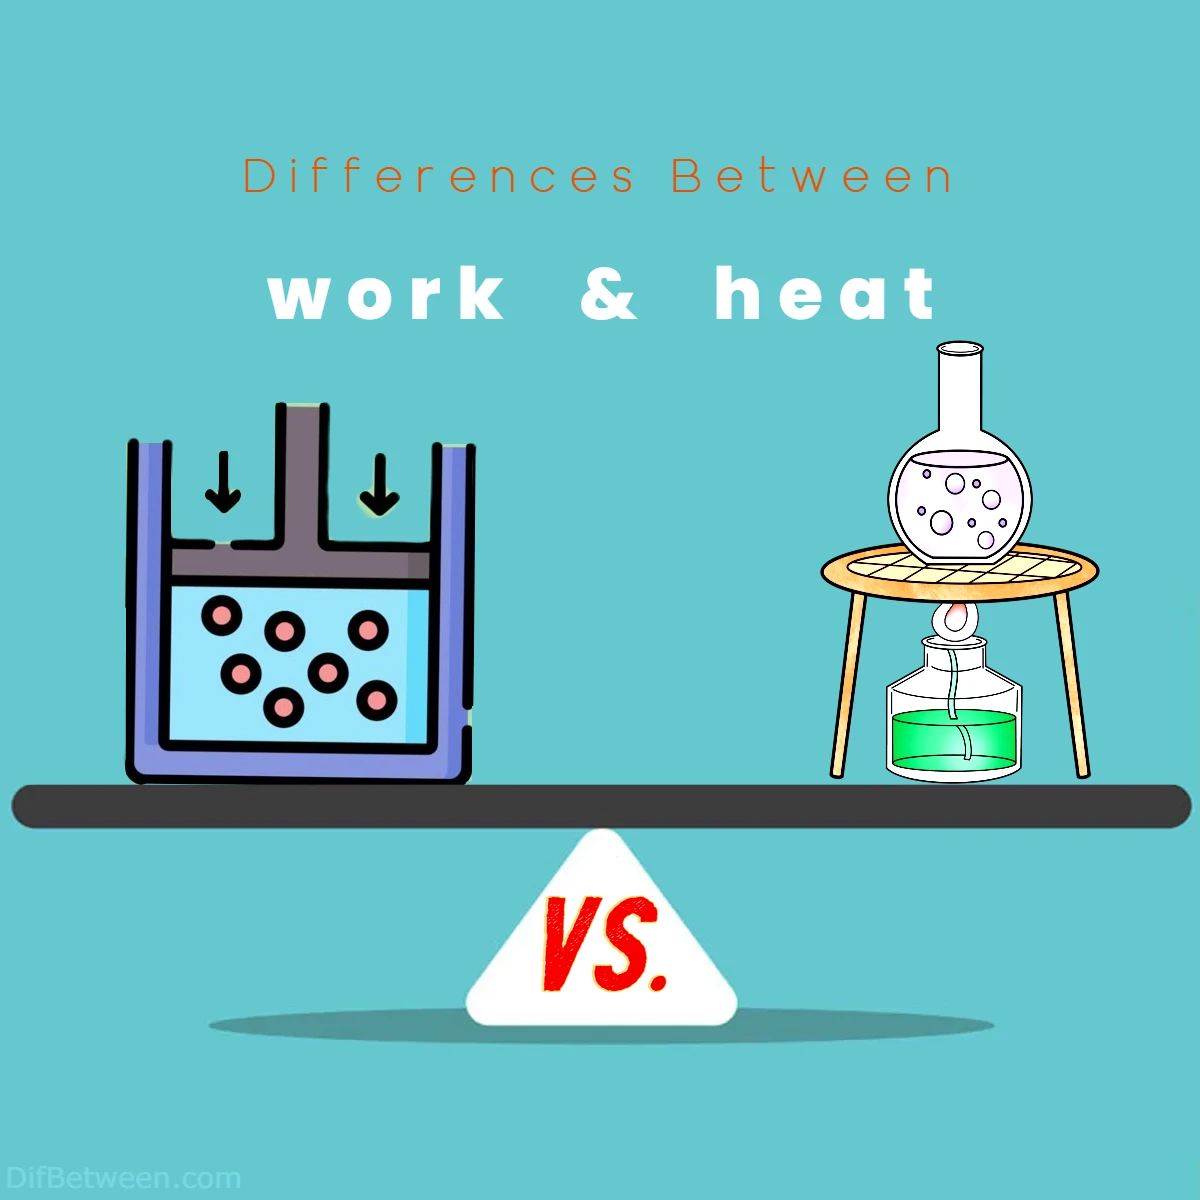 Differences Between work vs heat